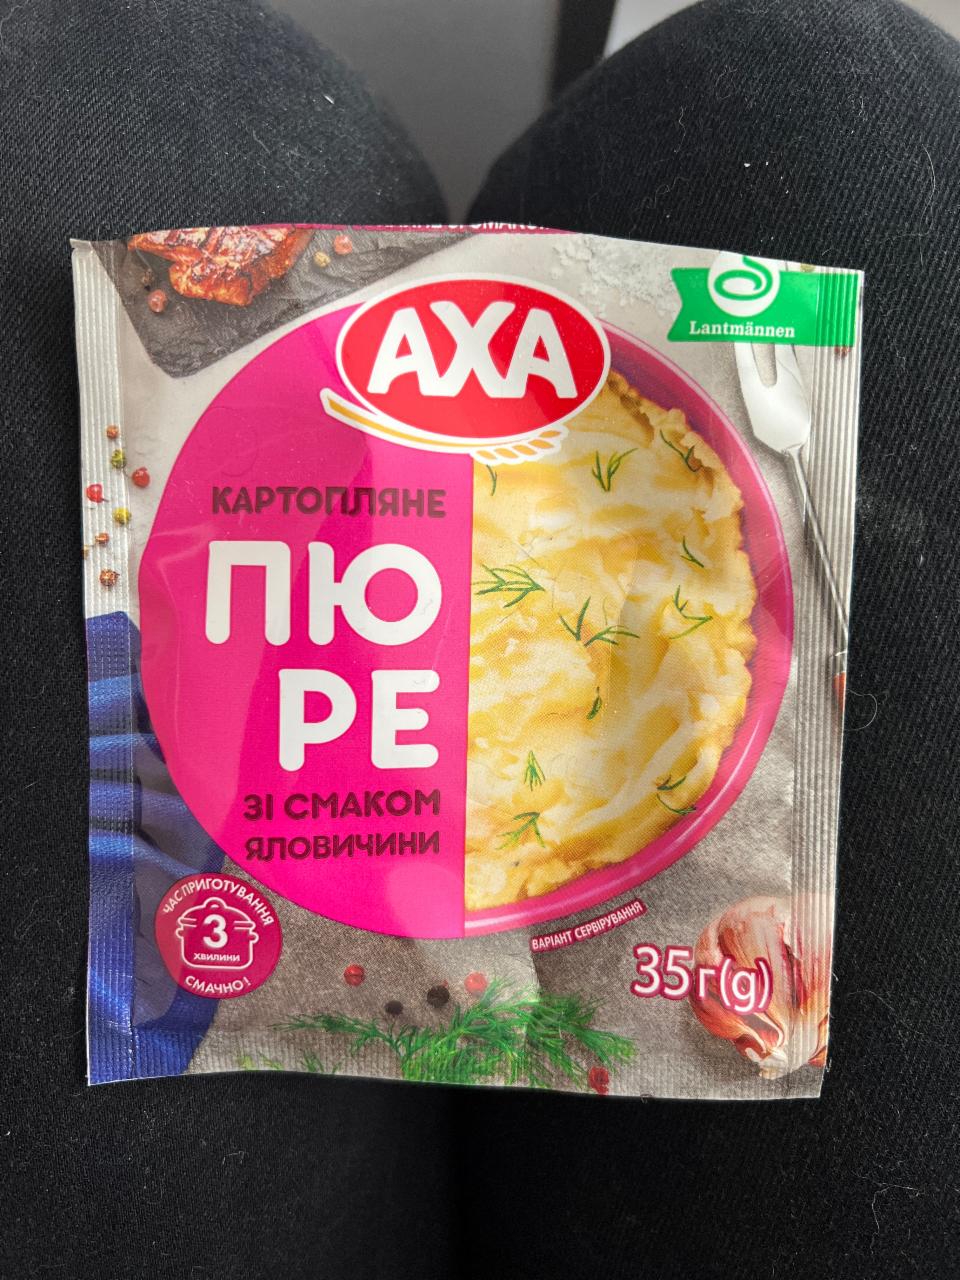 Фото - Картофельное пюре со вкусом говядины Axa